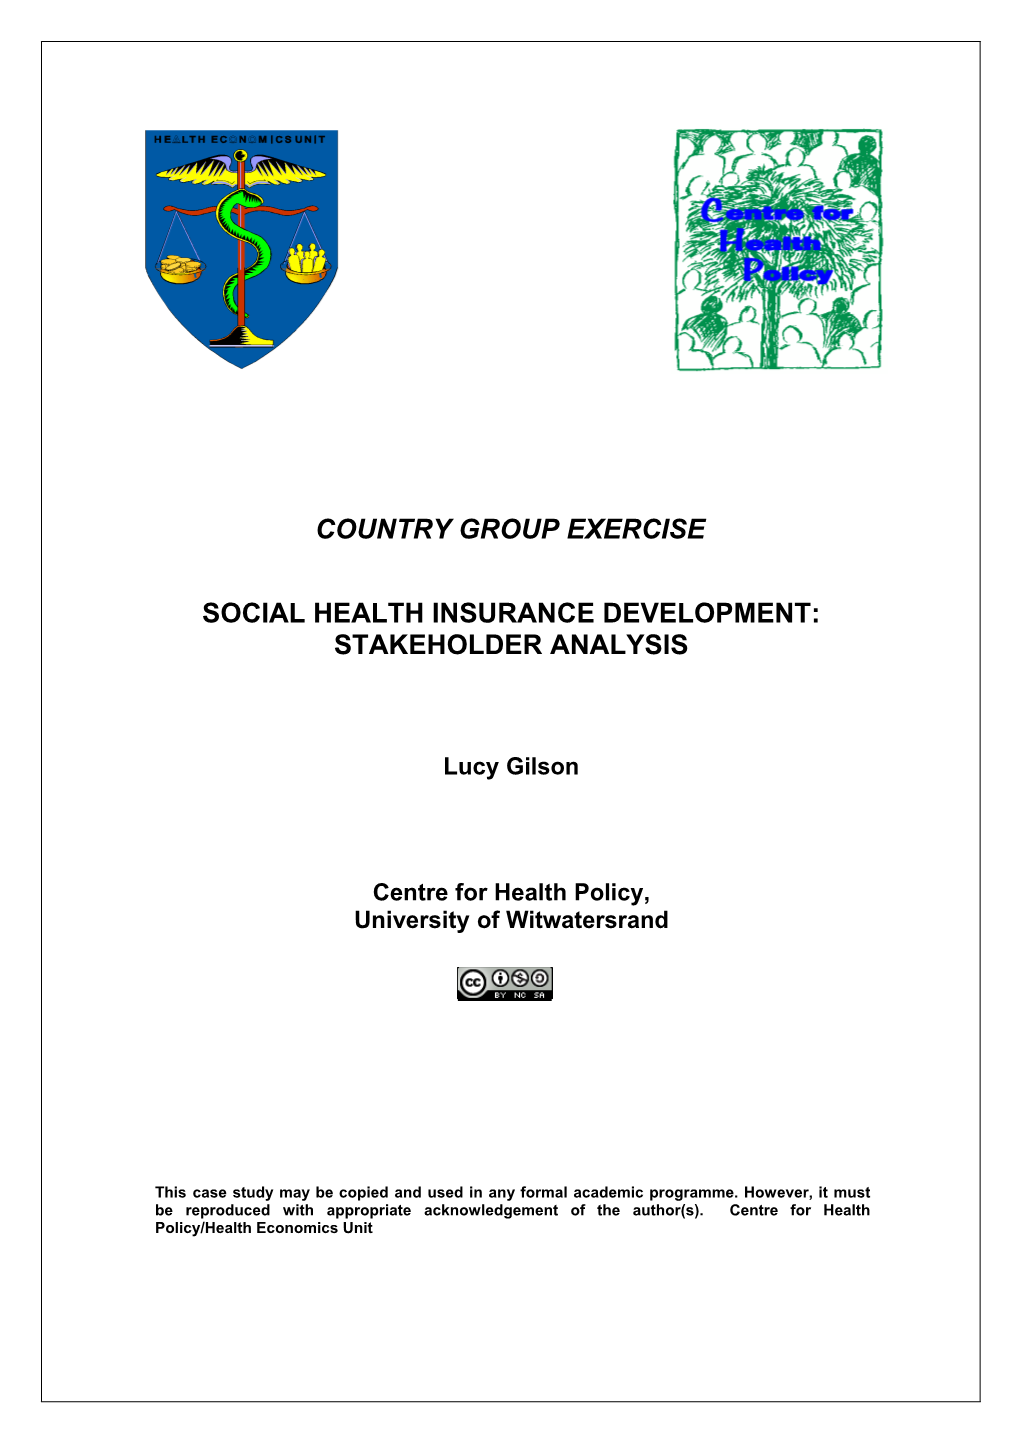 Social Health Insurance Development: Stakeholder Analysis